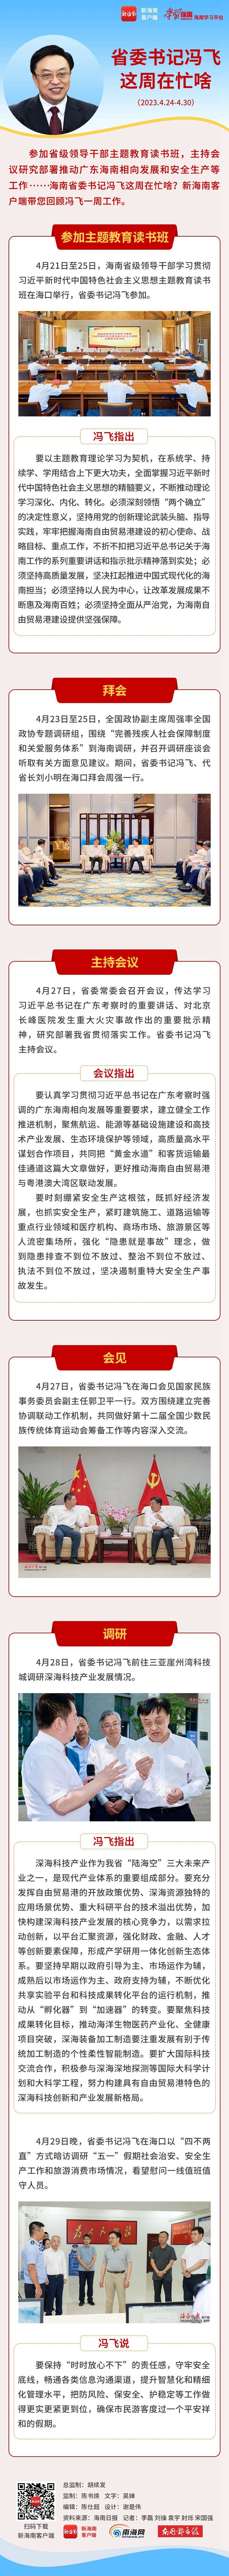 海南政情 | 省委书记冯飞这周在忙啥？（4月24日至4月30日）